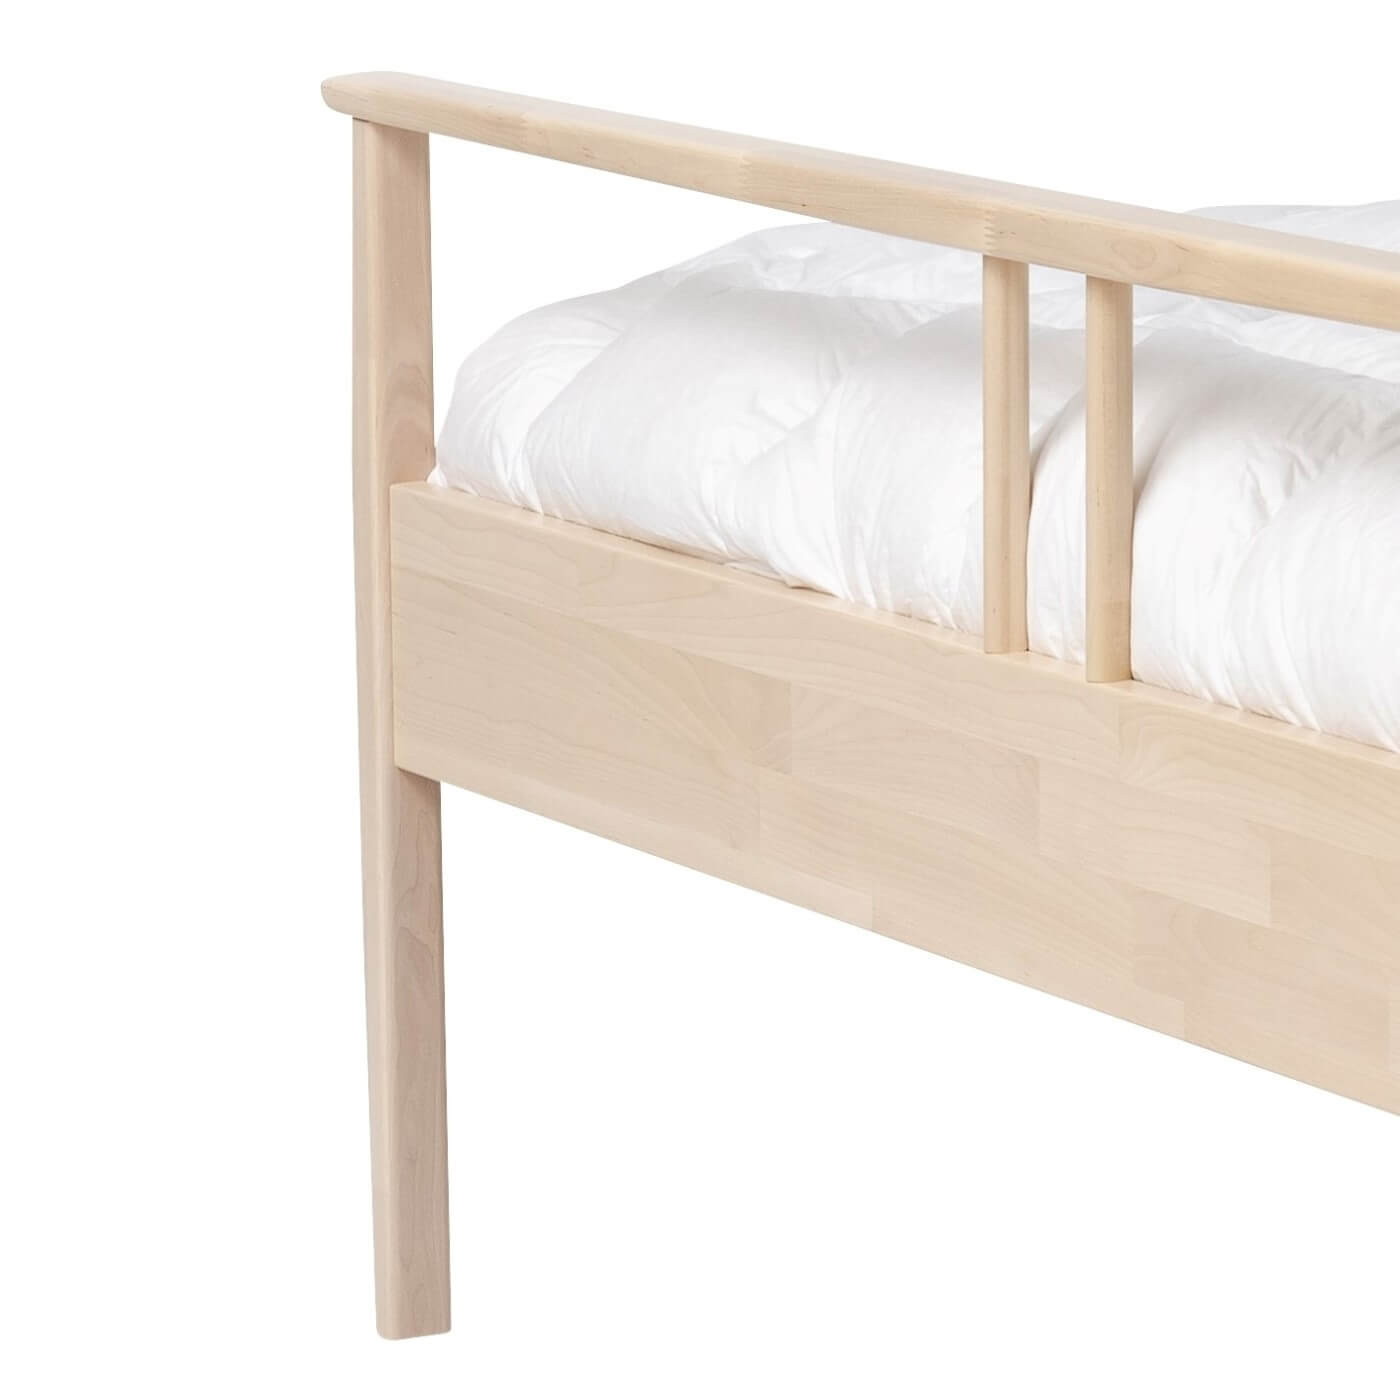 Łóżko drewniane nowoczesne NOEL. Przybliżony widok wysokiej nóżki z litego drewna brzozy skandynawskiej. Nowoczesny design